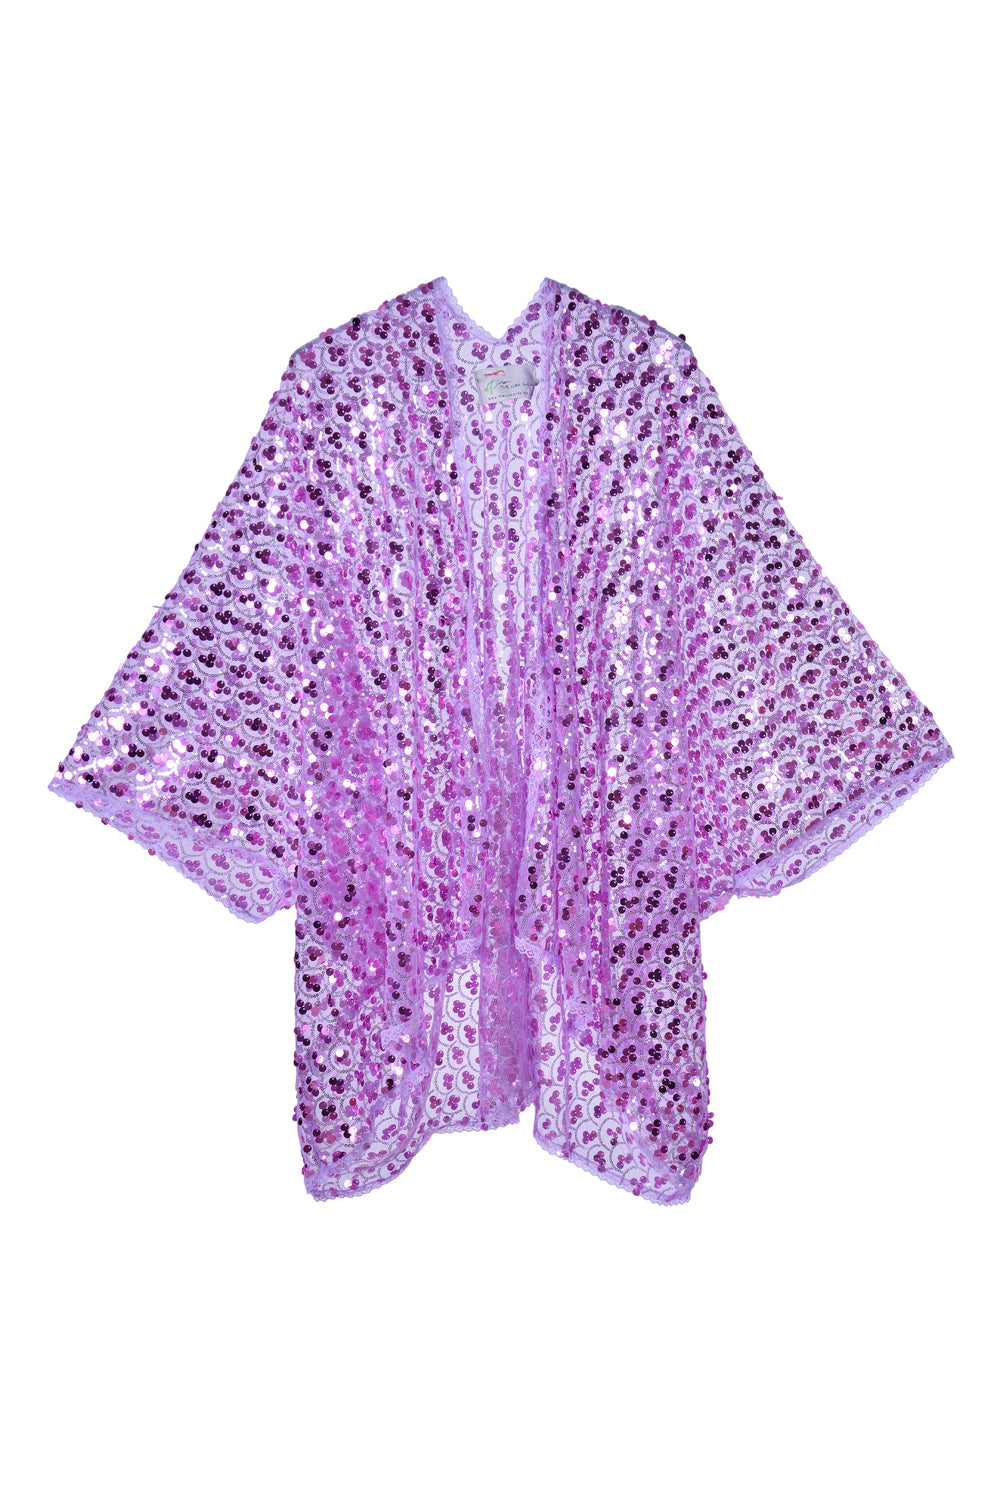 Sequin Kimono - Lavender Dreams